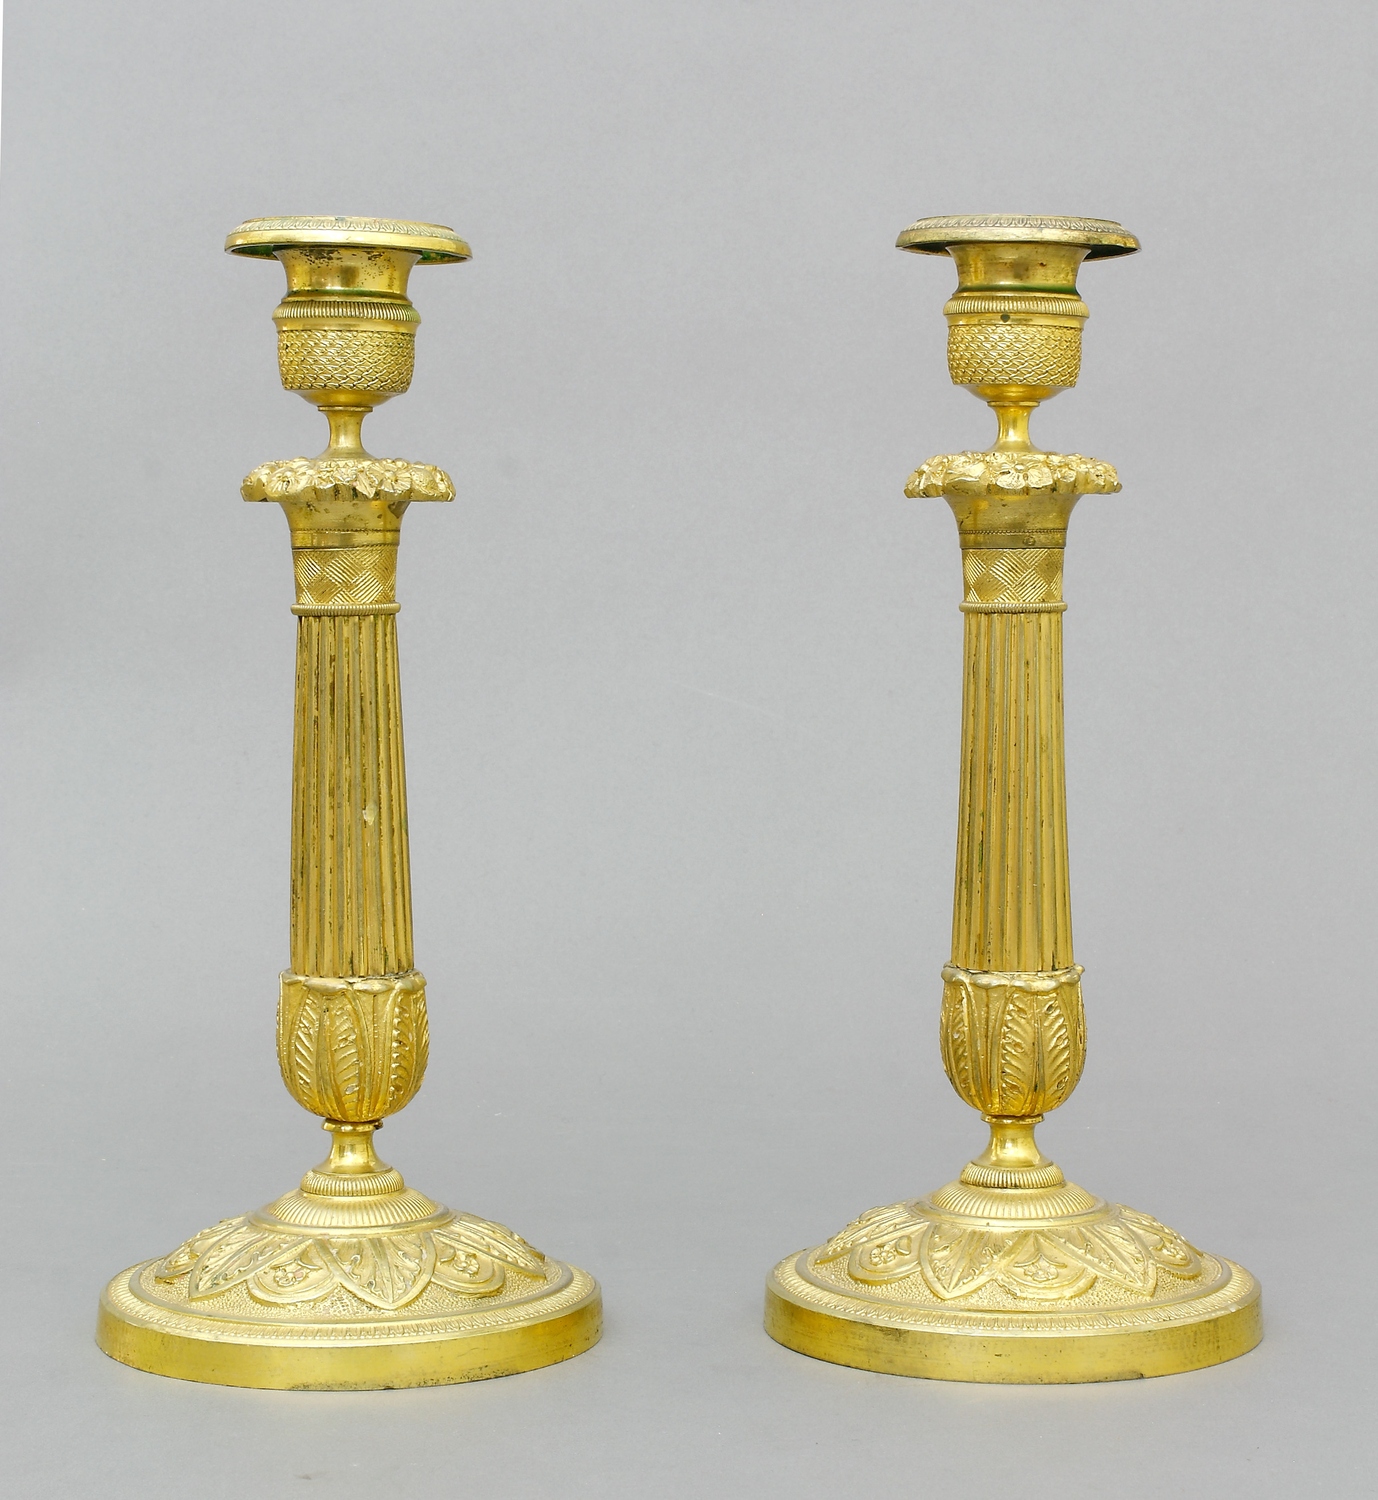 Auktionshaus Quentin Berlin  Möbel / Einrichtungsgegenstände Kerzenleuchter  Bronze  vergoldet  Frankreich  Empire  19. Jh.  ein Paar